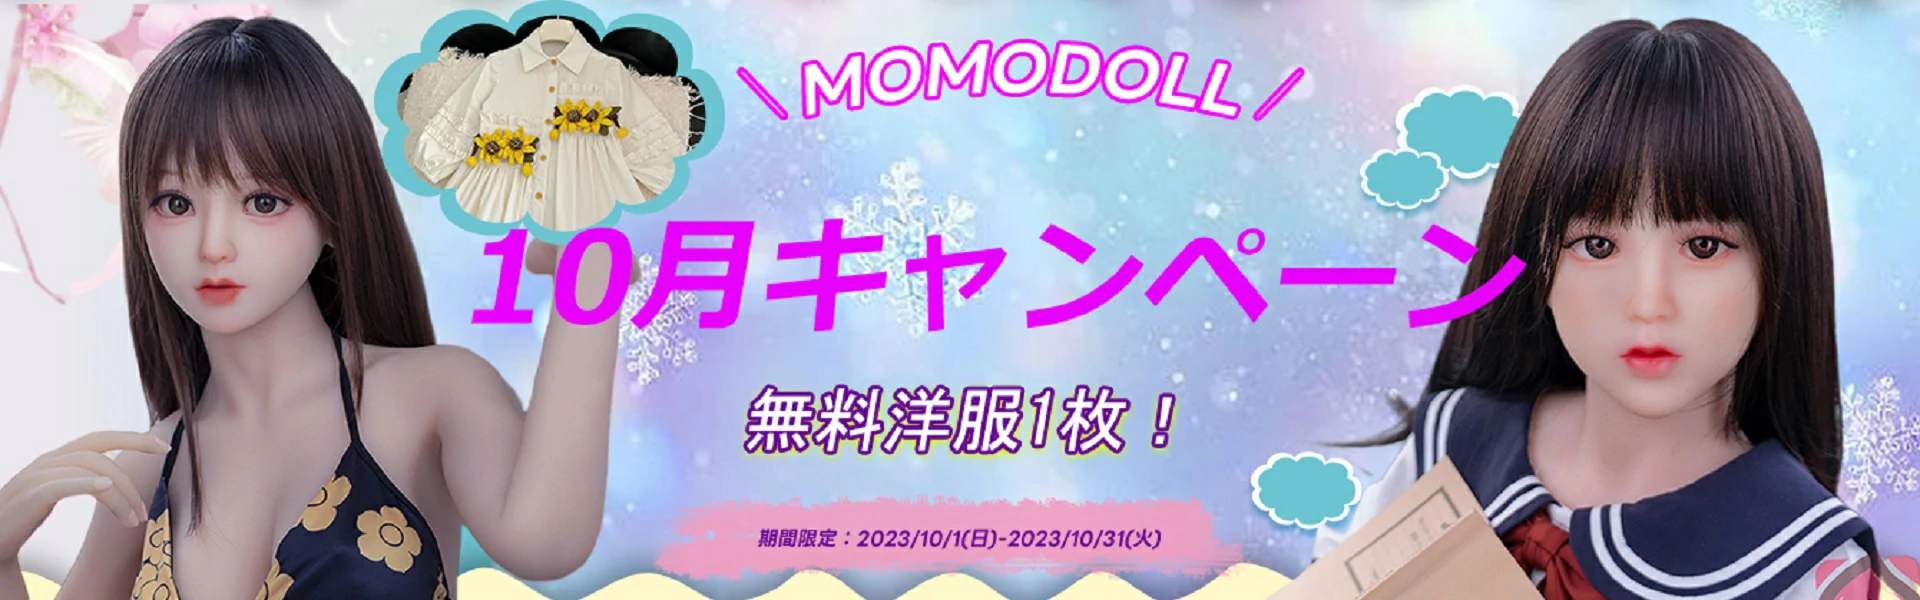 MOMODOLL 10月キャンペーン